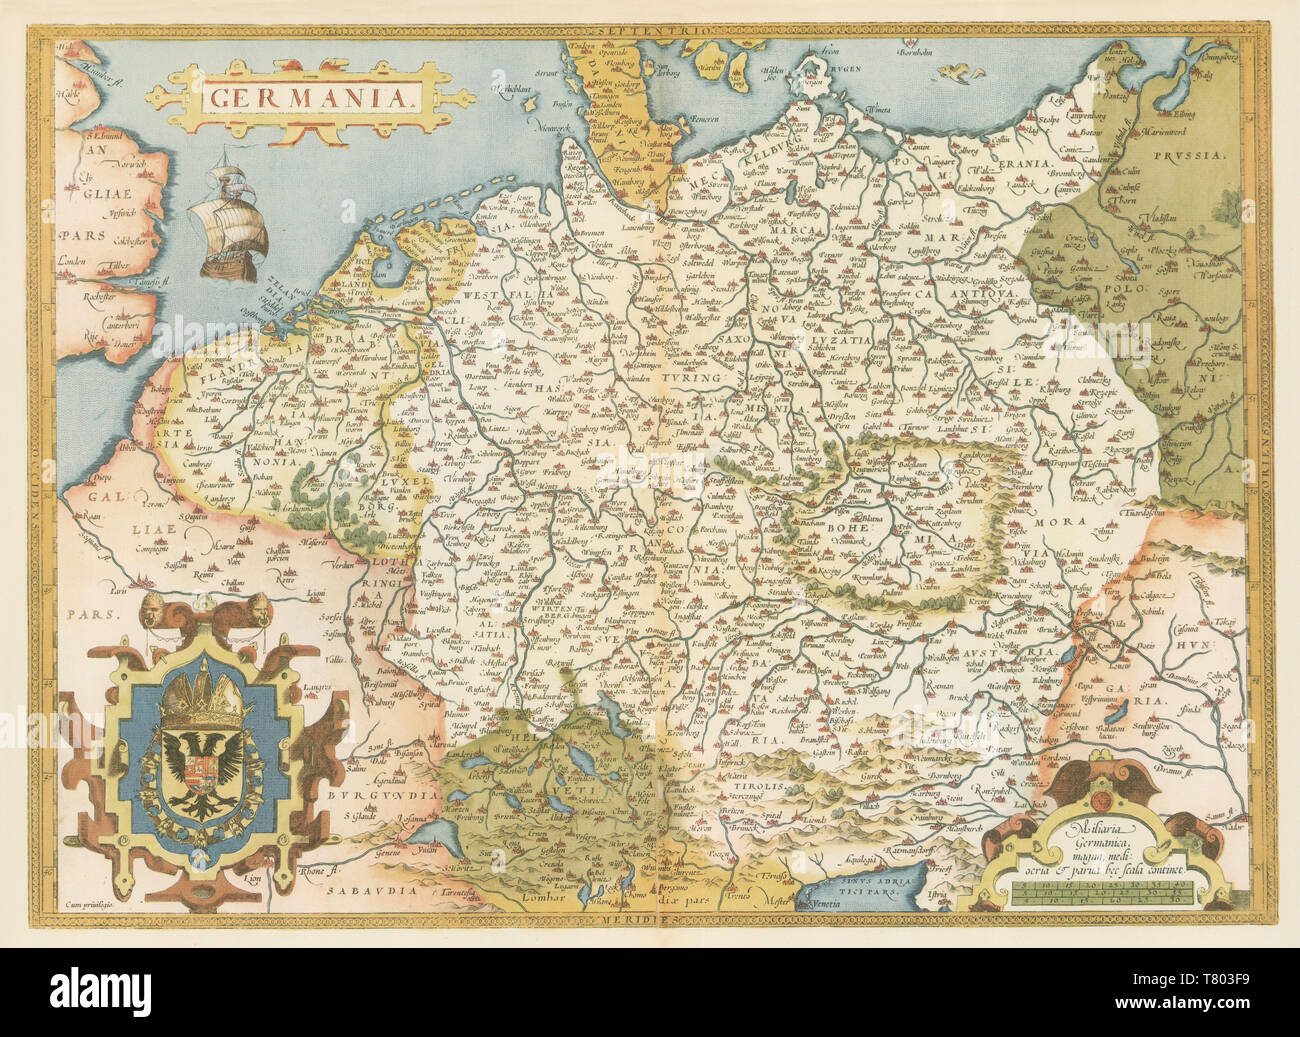 Theatrum Orbis Terrarum, Germany, 1570 Stock Photo